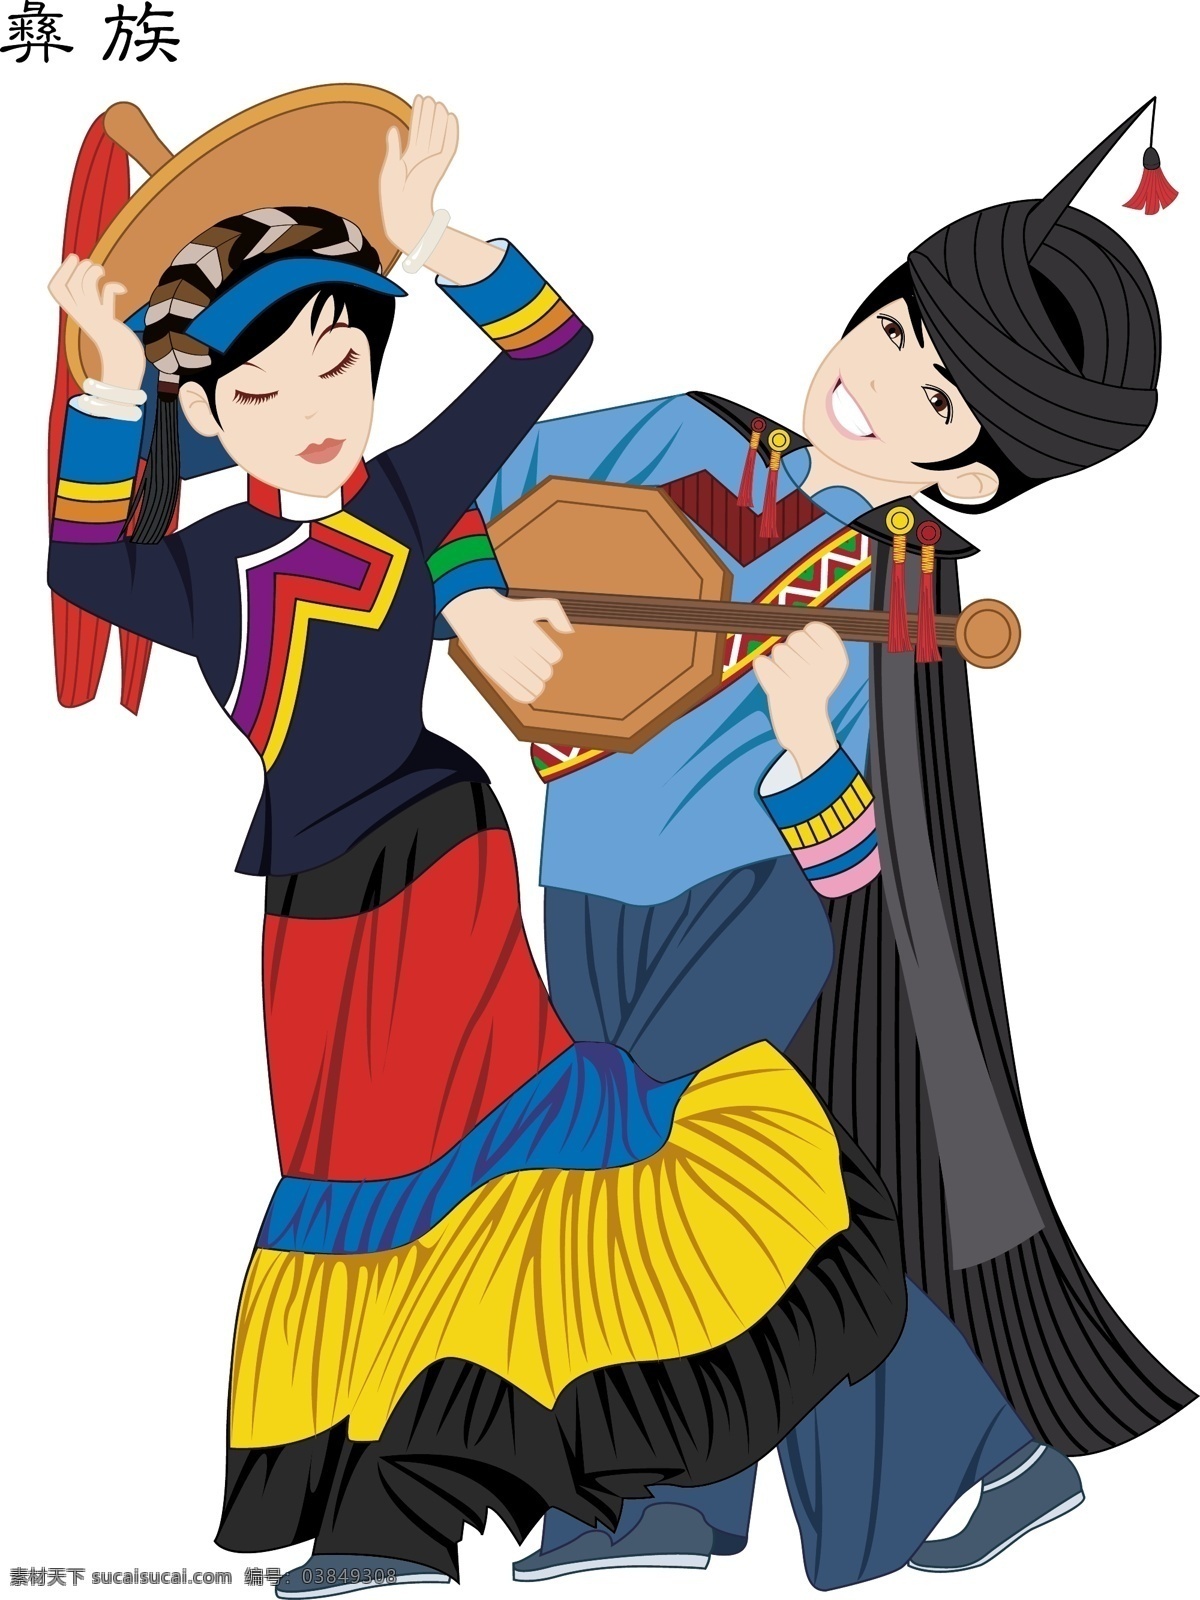 少数民族 人物 插画 56个 民俗 传统 歌舞画 服饰 服装 卡通图案 名族 人物插画 精美 创意 装饰 图案 地方特色 民族特色 动漫动画 动漫人物